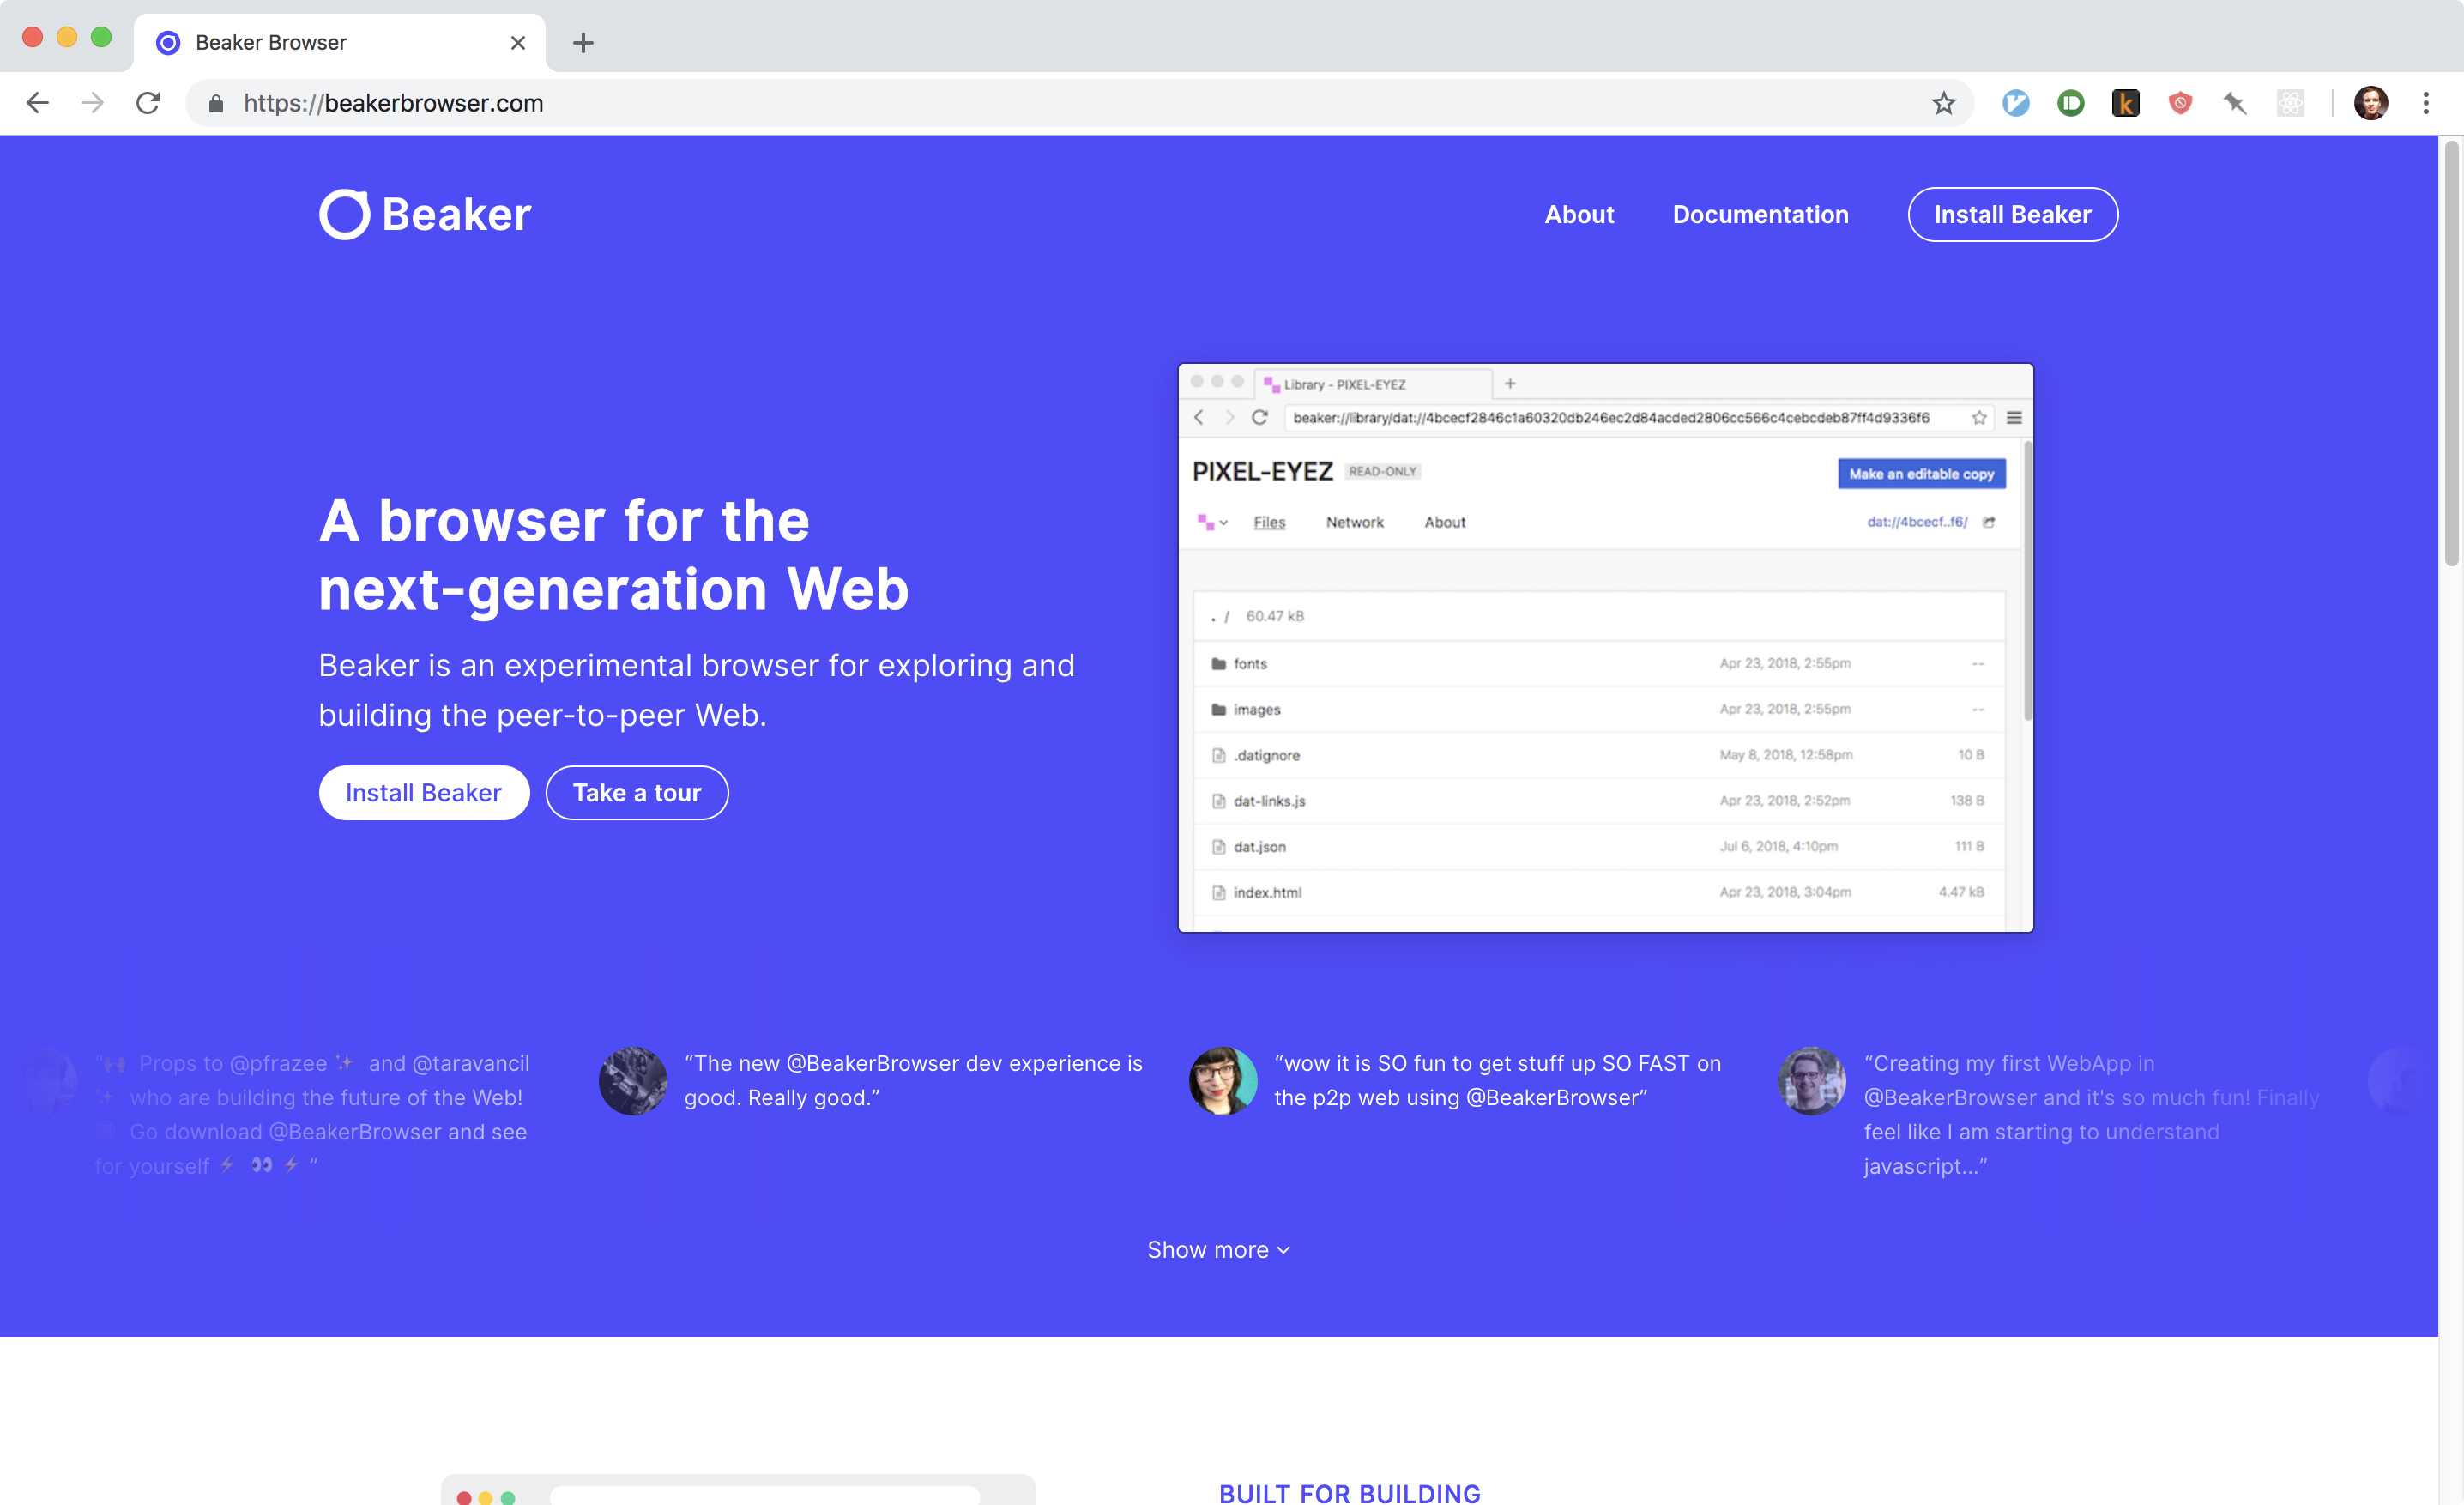 A screenshot of the Beaker browser website.